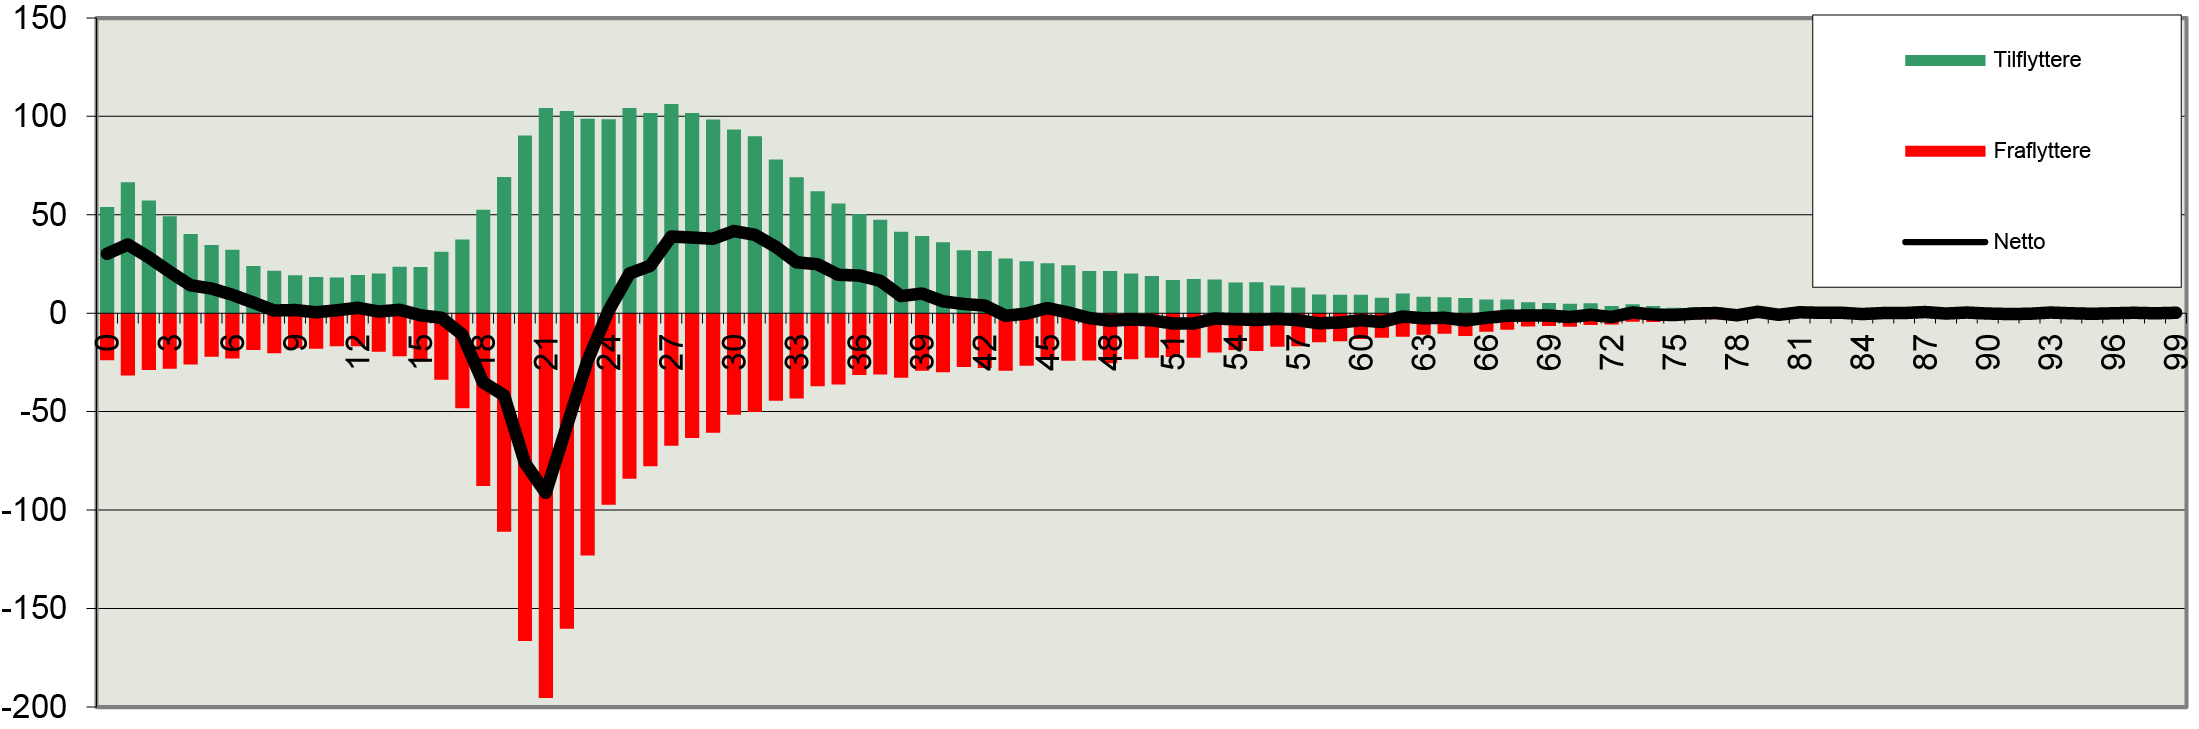 Figur 17. Årligt antal til- og fraflyttere på 1-årsintervaller (årligt gennemsnit for 2003-2021)